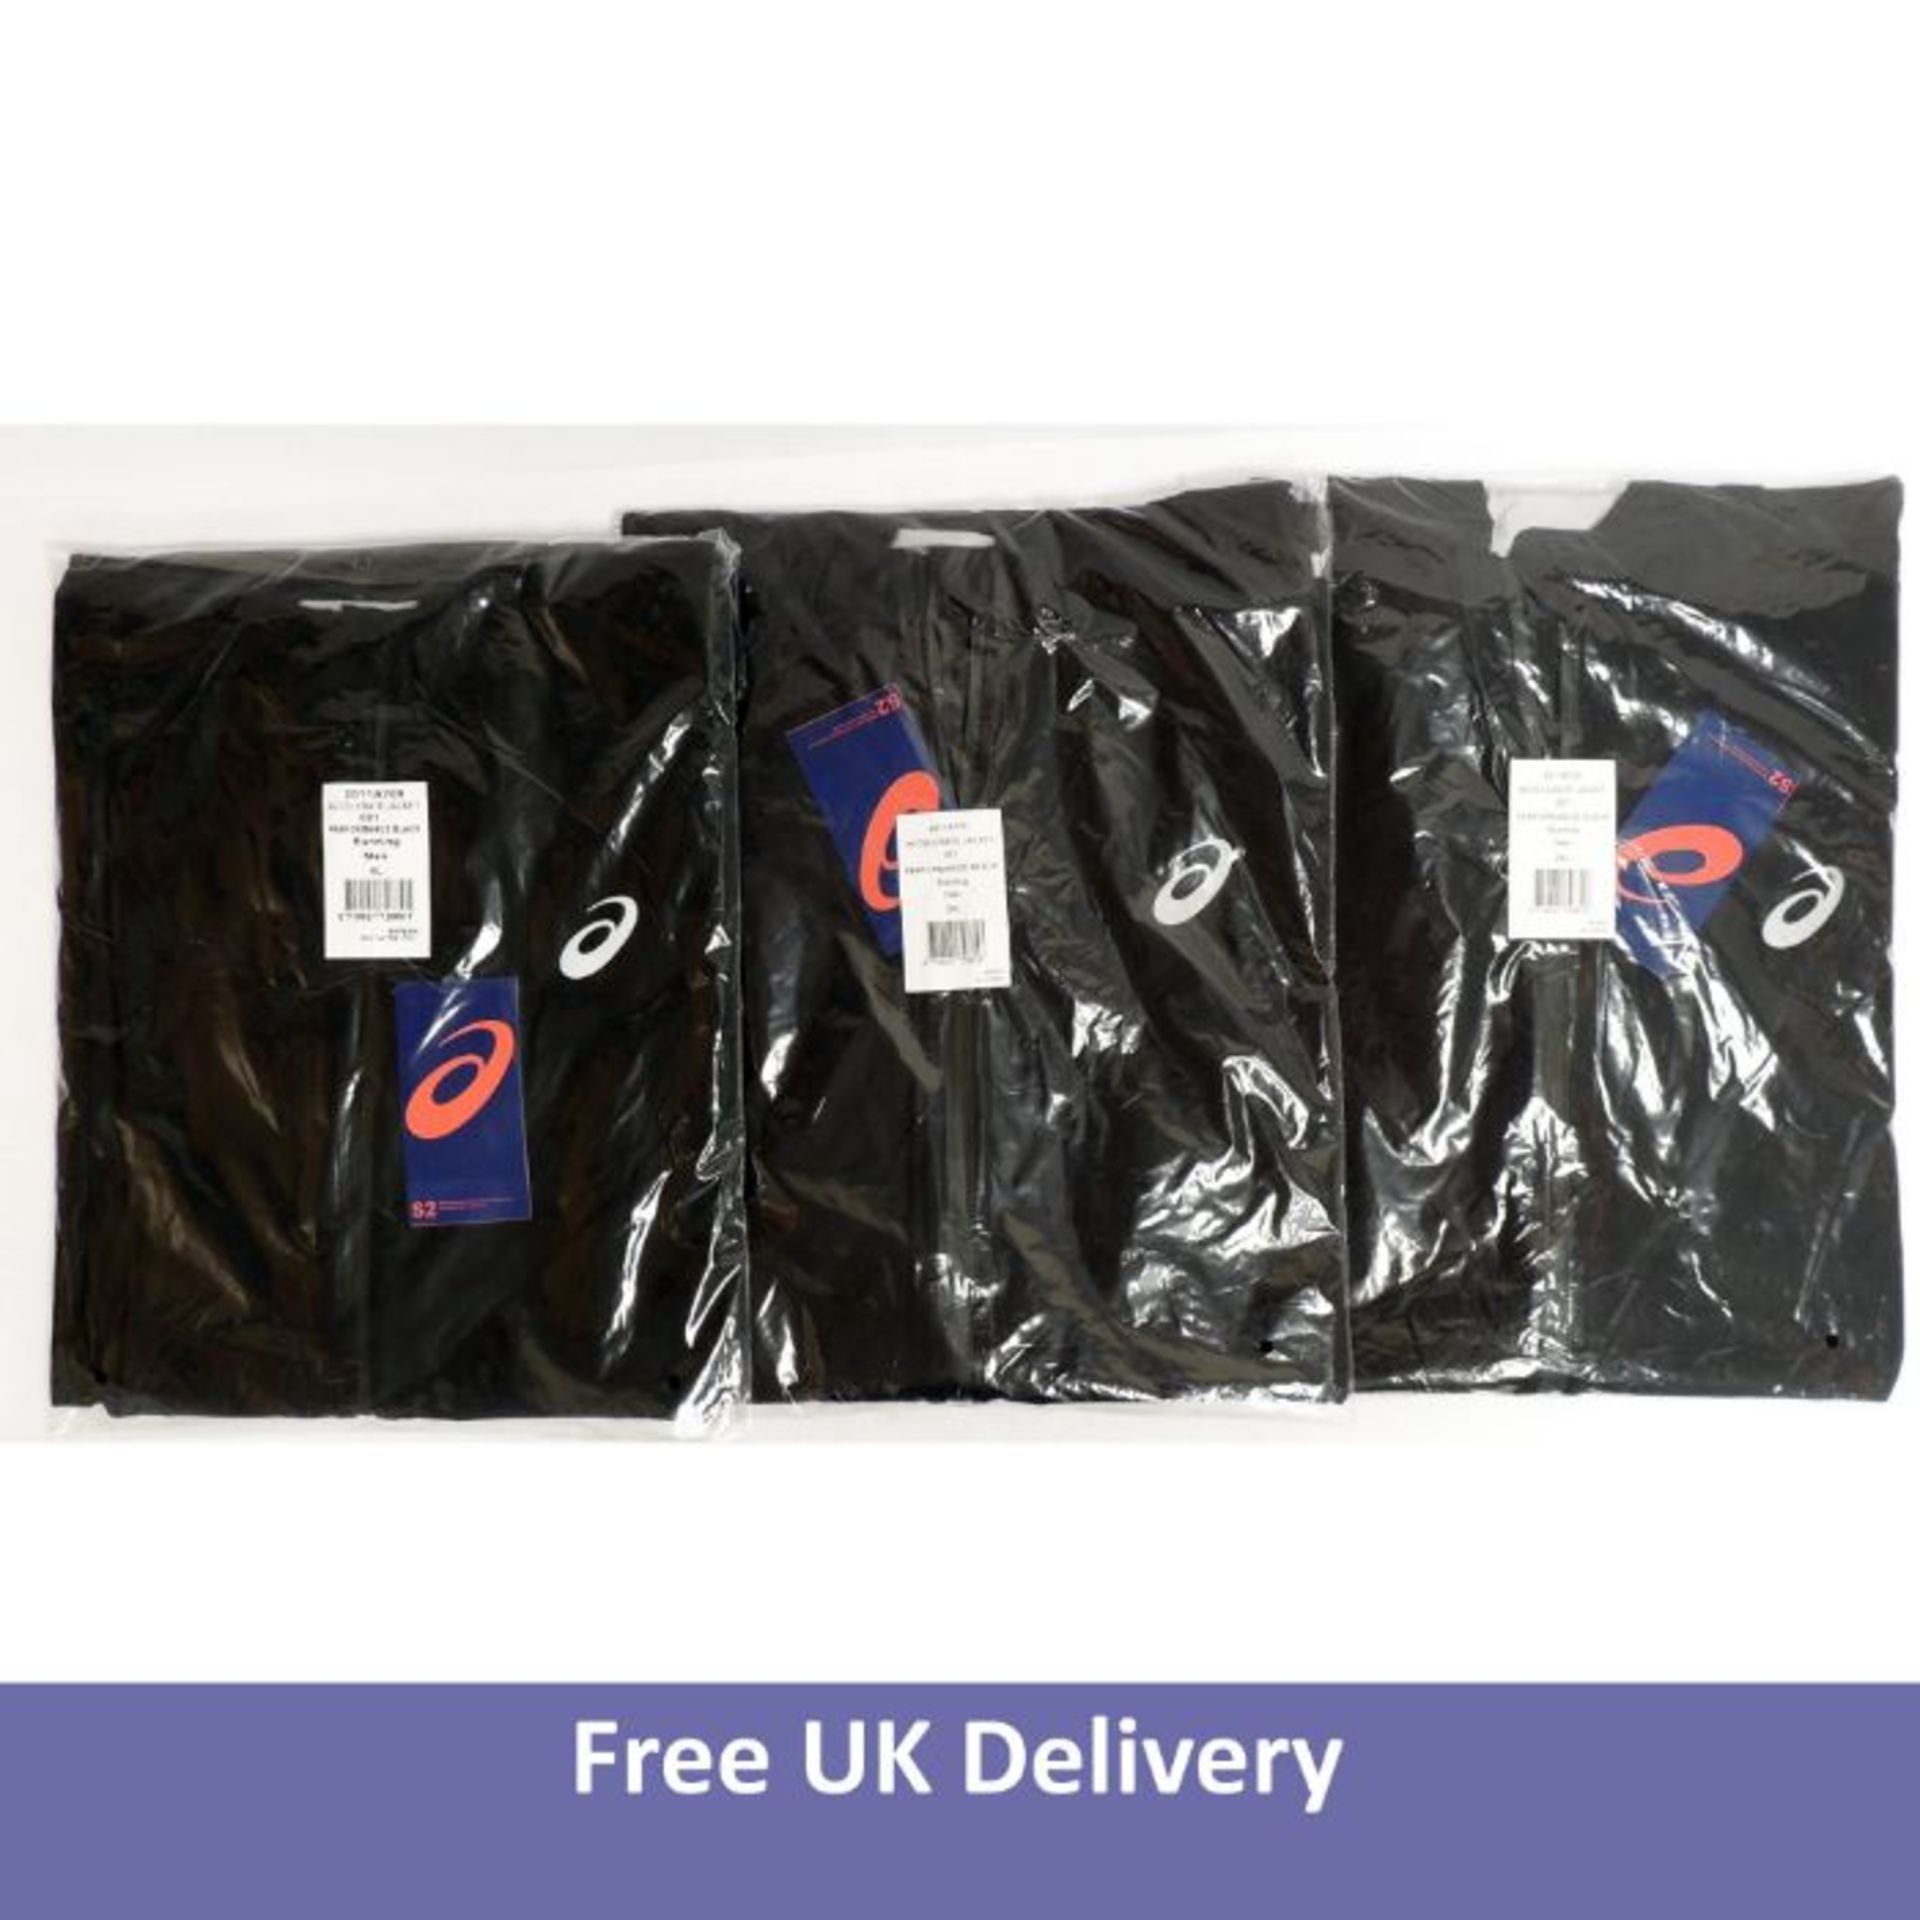 Three Asics Men's Accelerate Jackets, Black, Size 2XL